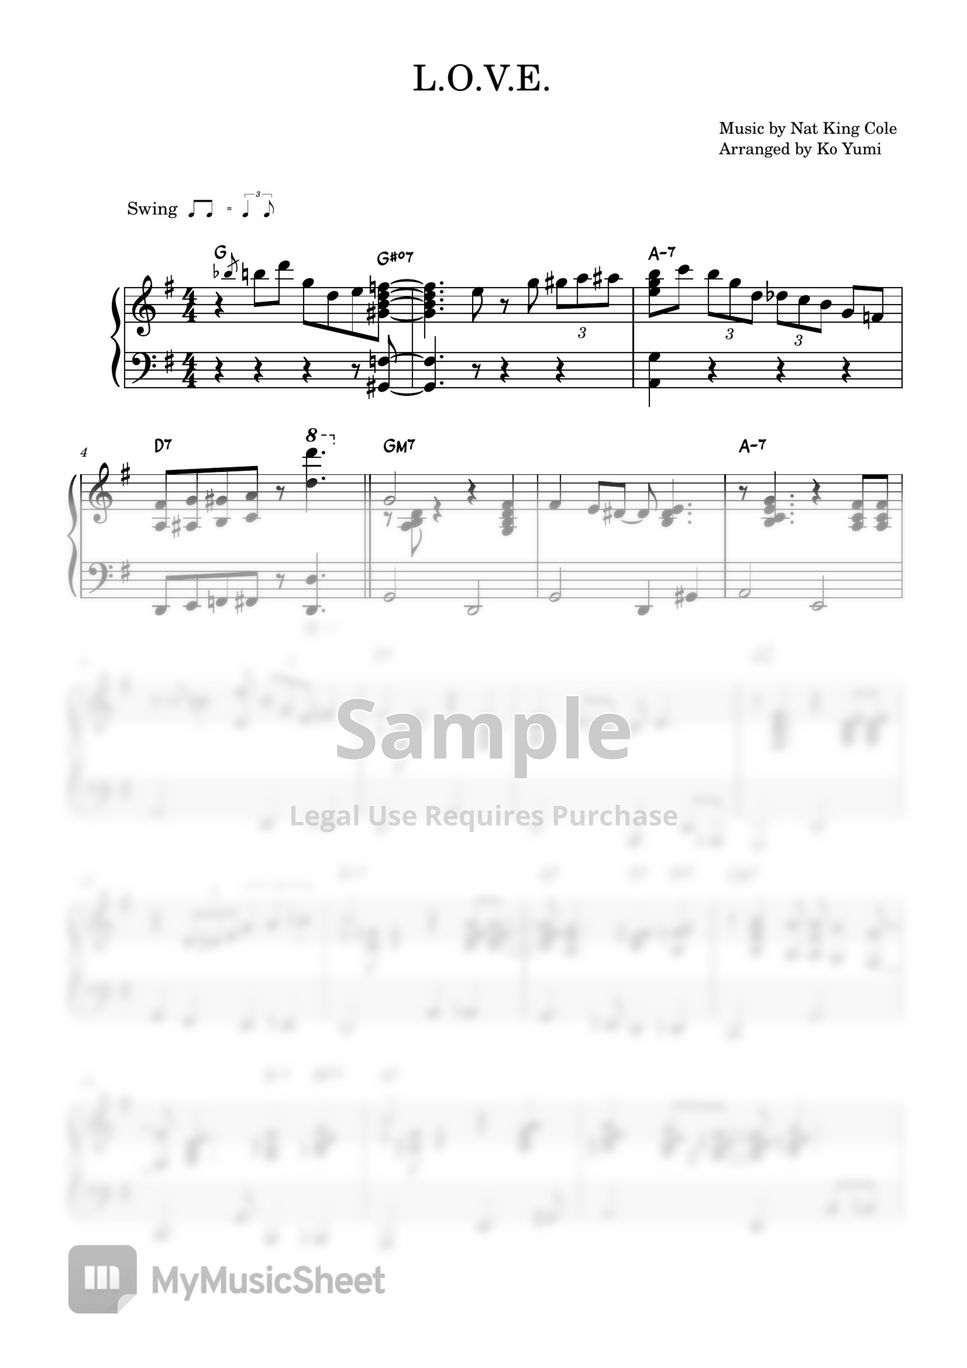 Nat King Cole - L.O.V.E. (Jazz Solo Piano) by KoYumi Music